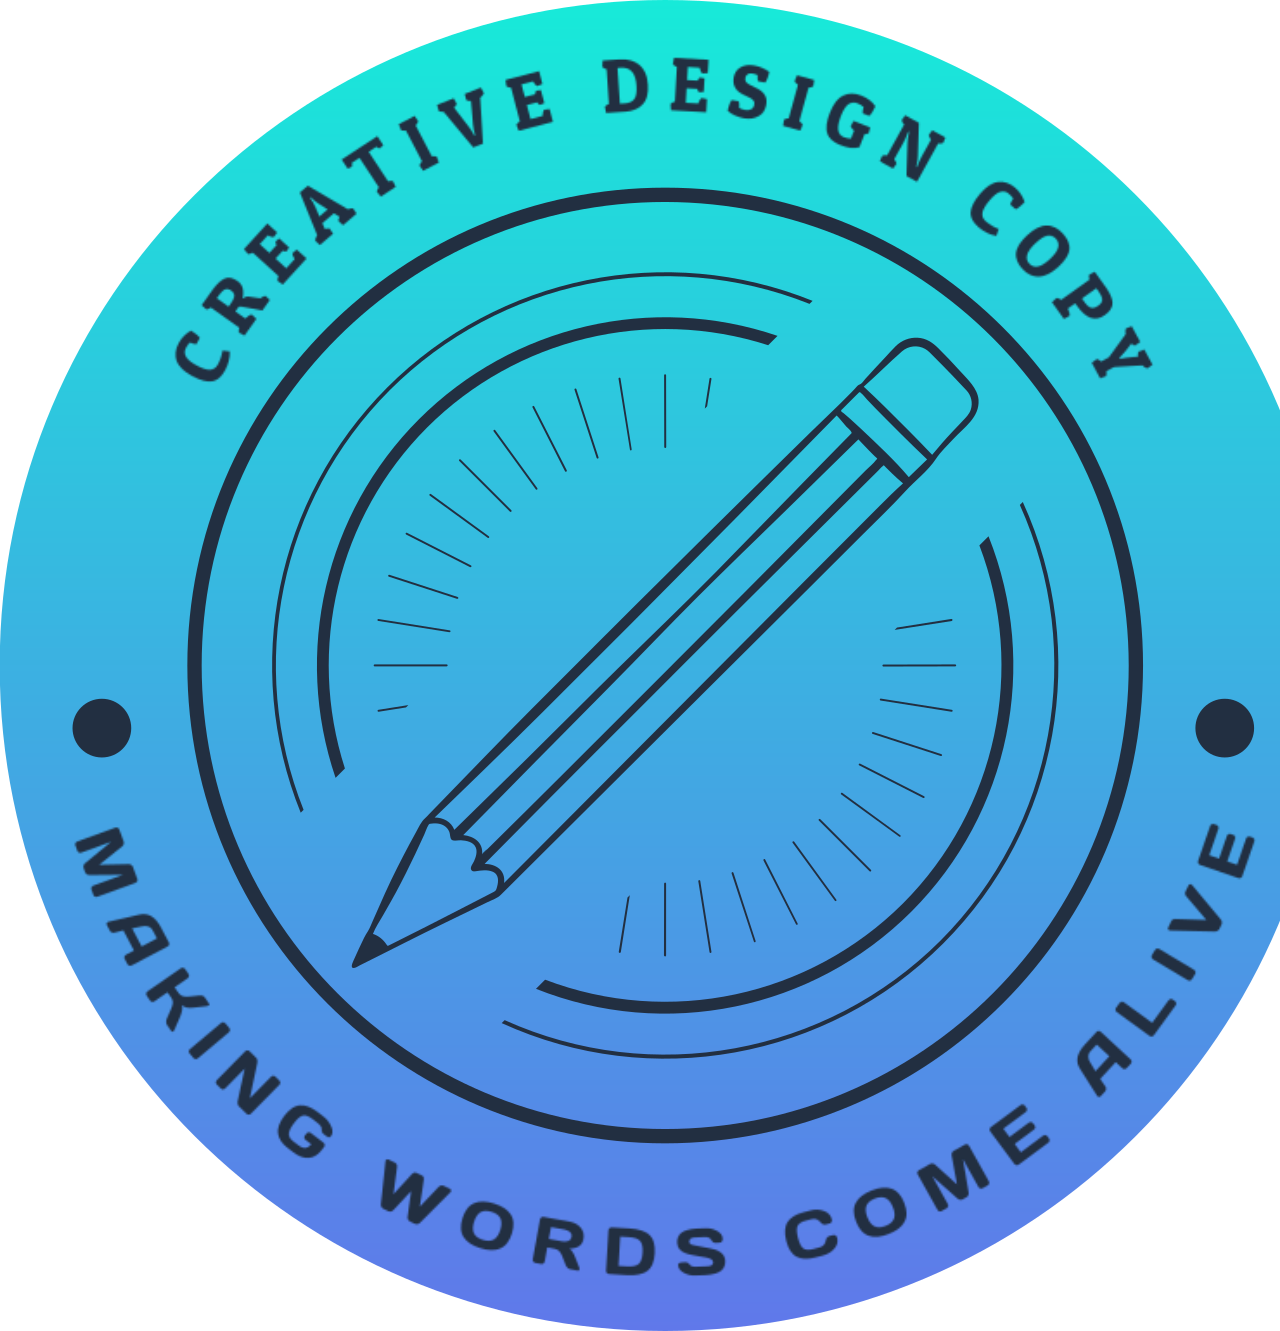 CREATIVE DESIGN COPY's logo